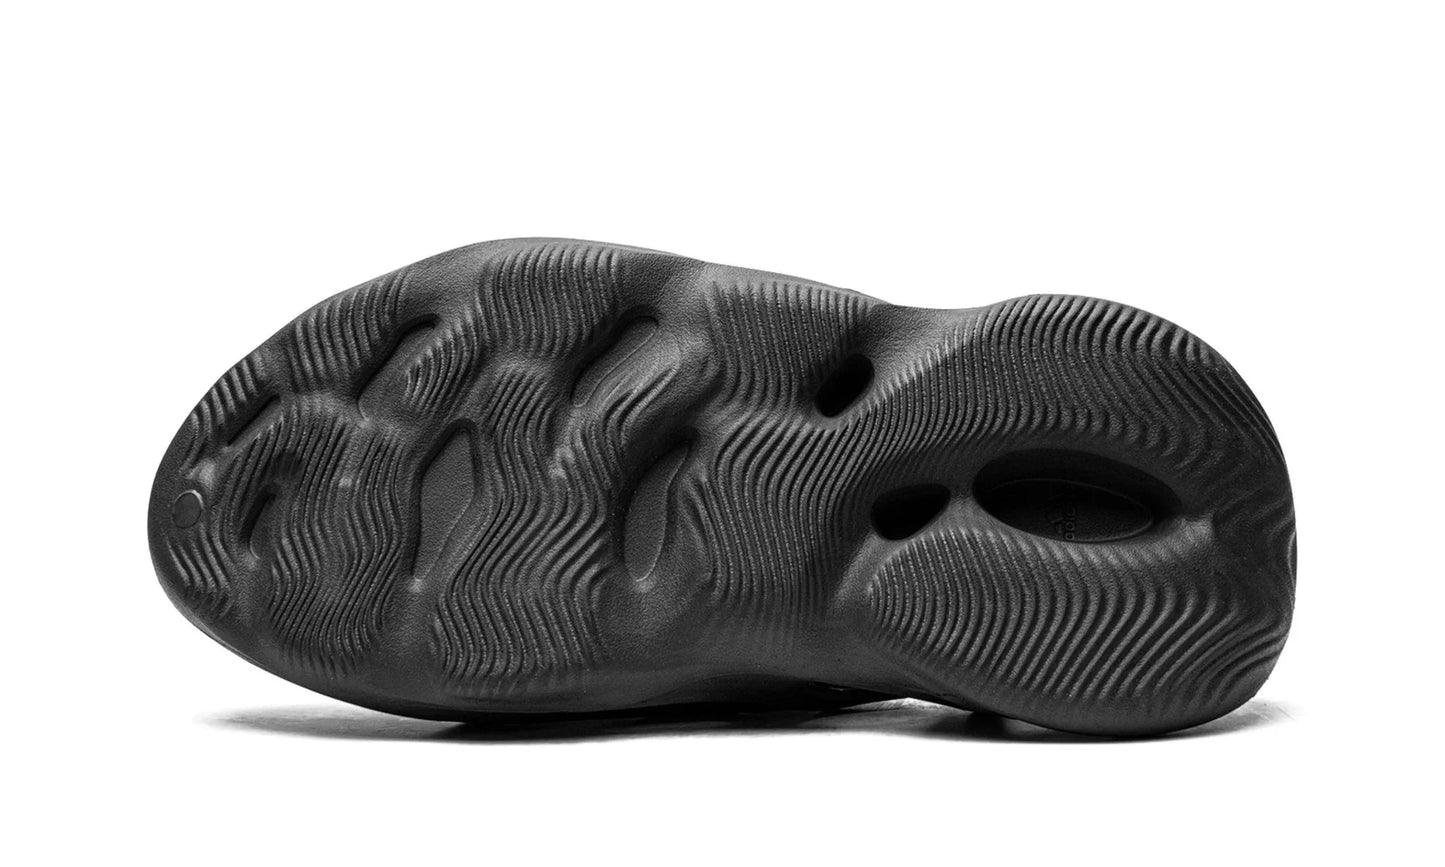 adidas Yeezy Foam Runner Onyx